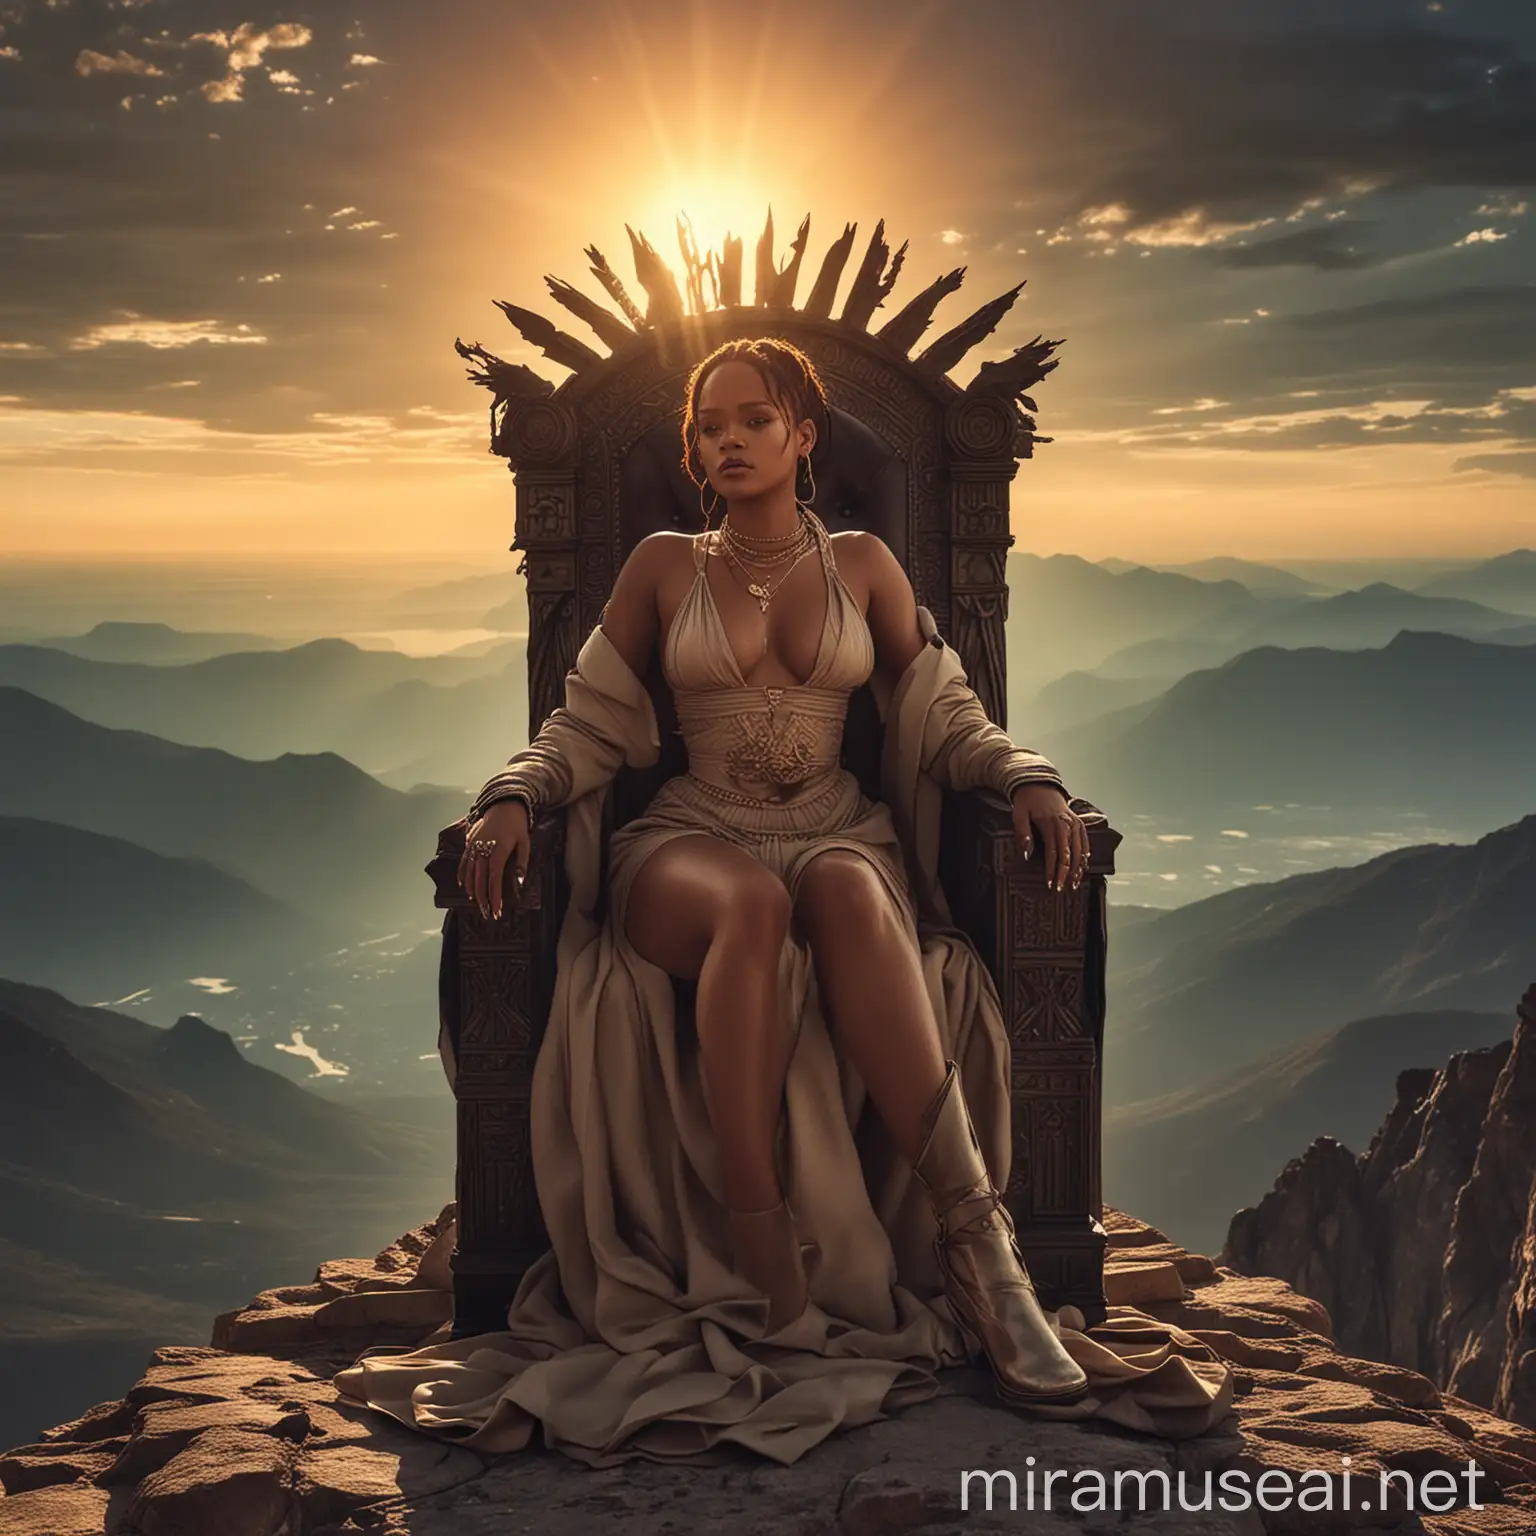 Rihanna Sitting Regally on Mountain Throne under Sunlight